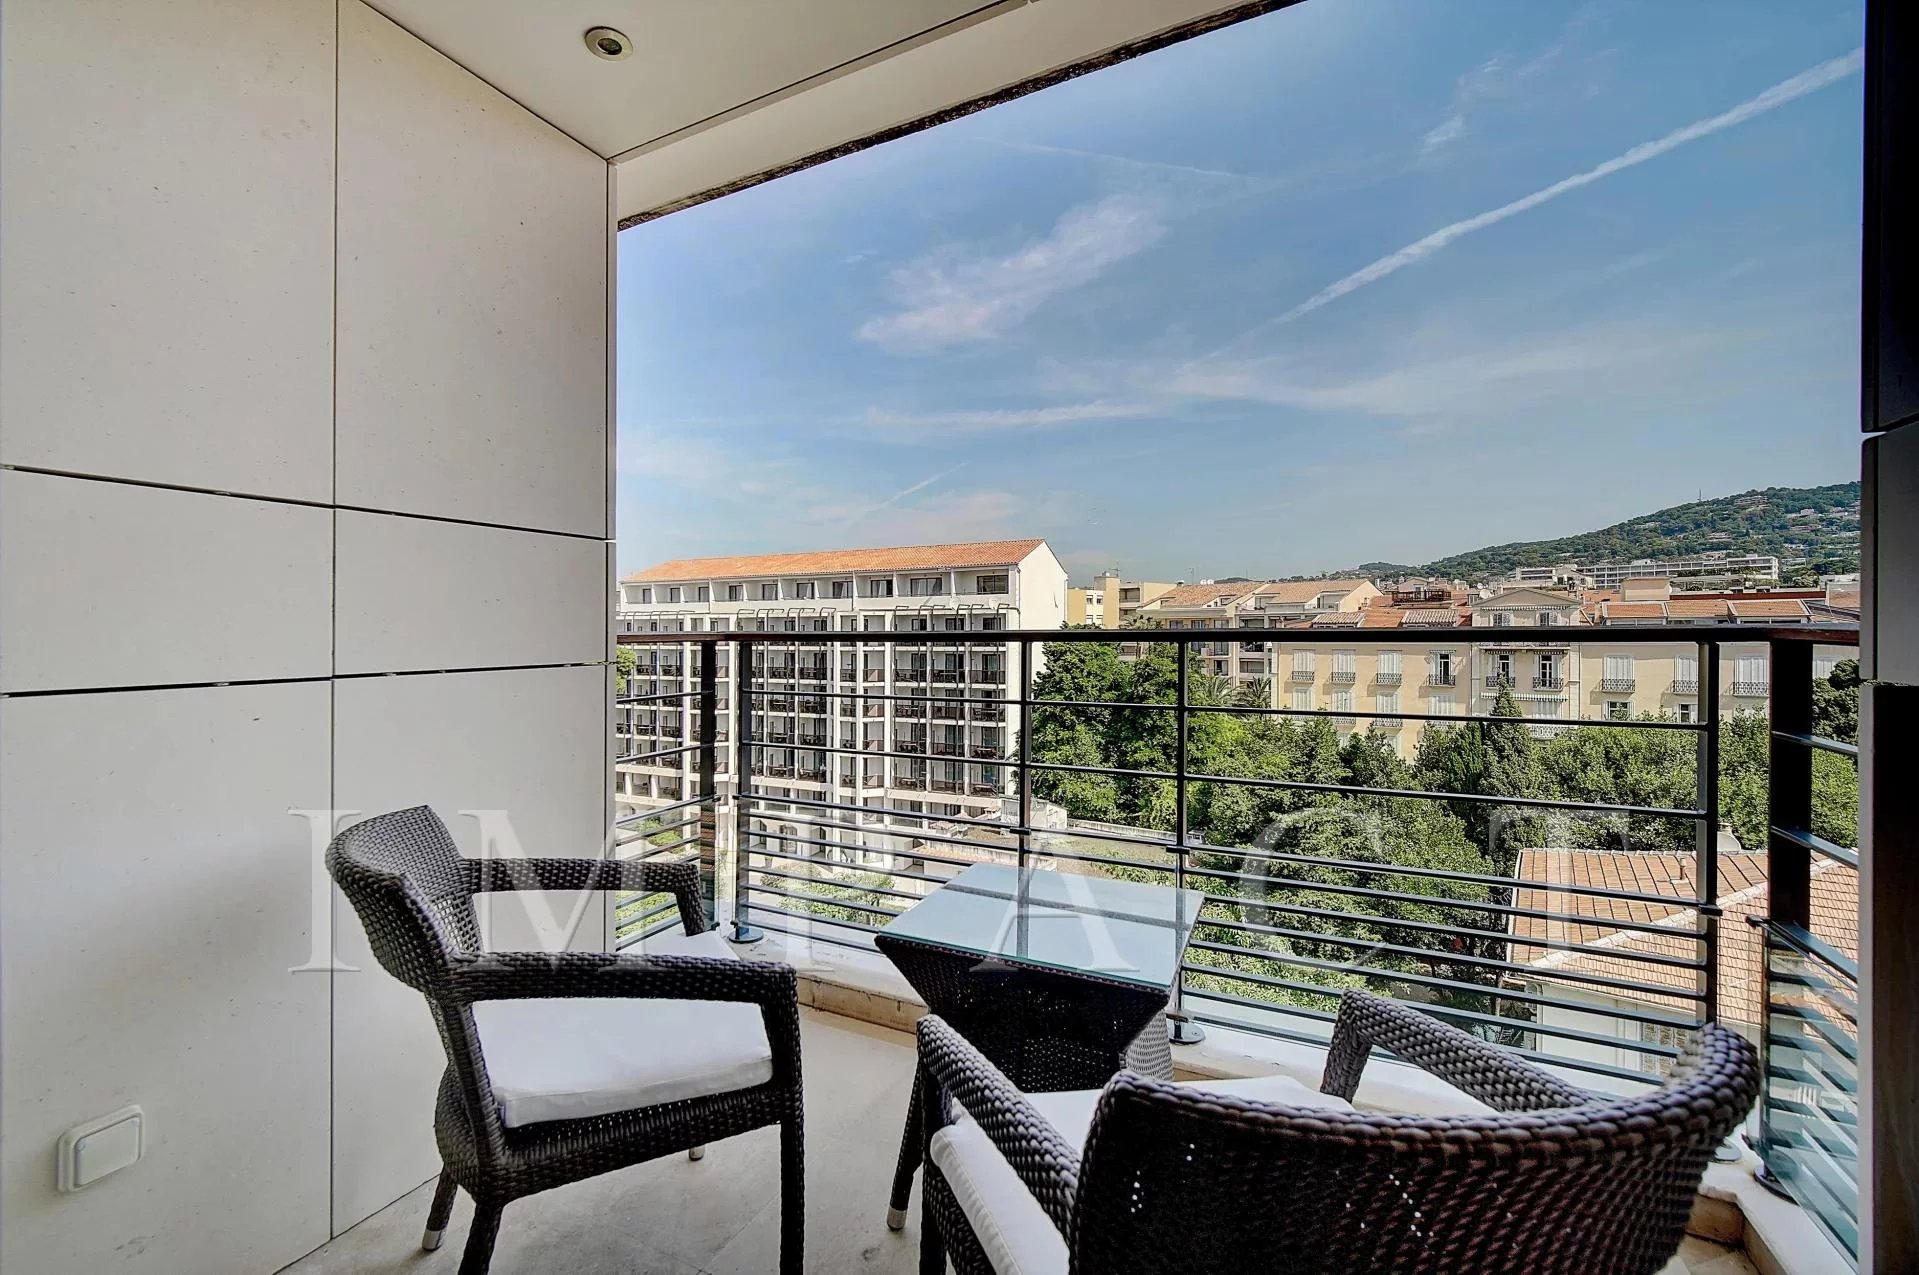 Location Nouvel appartement 2 pièces dans le centre ville de Cannes